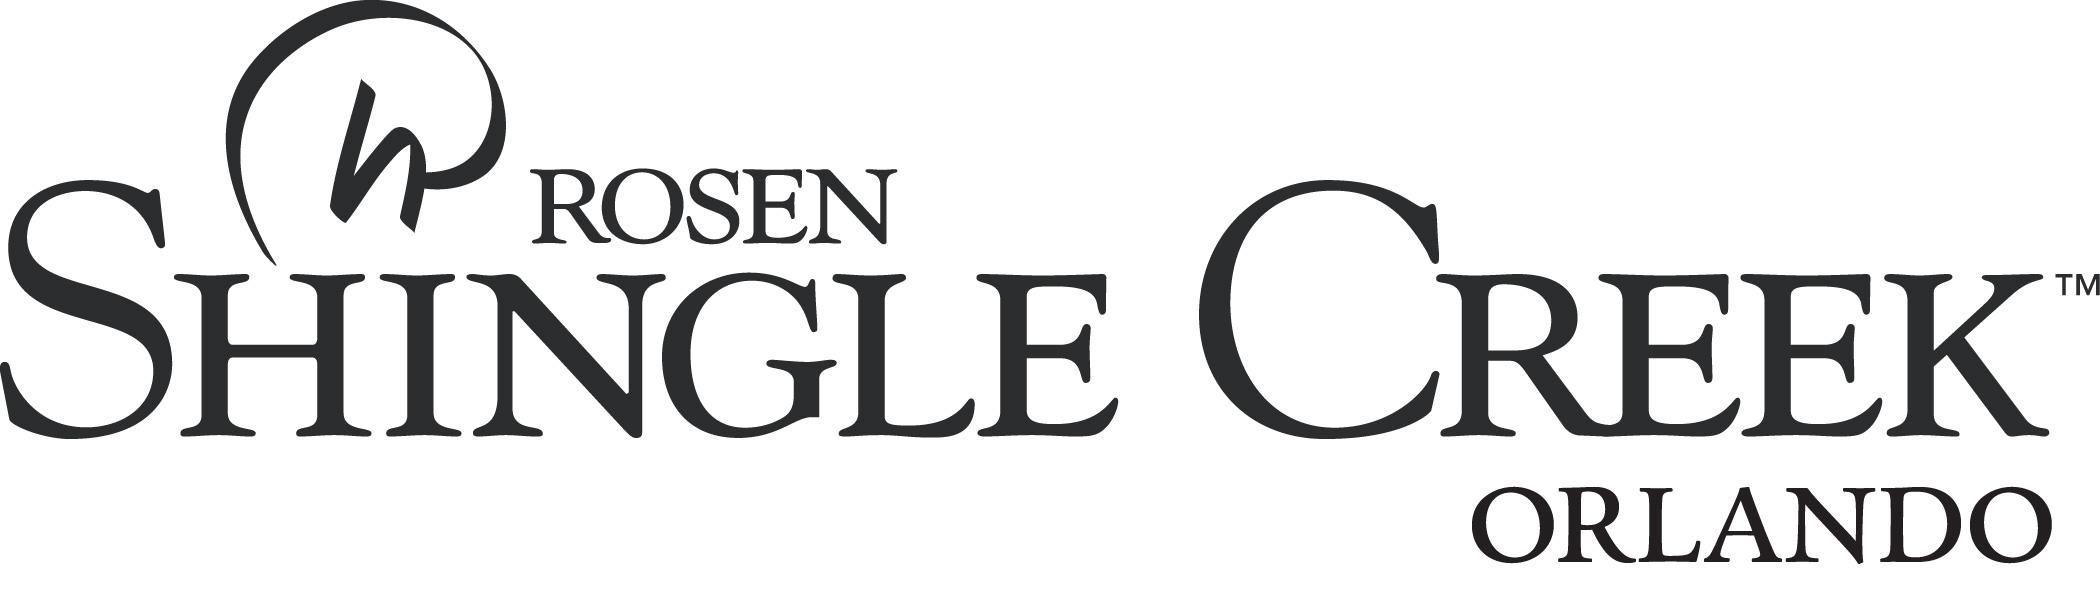 Rosen Logo - Logos. Rosen Shingle Creek®